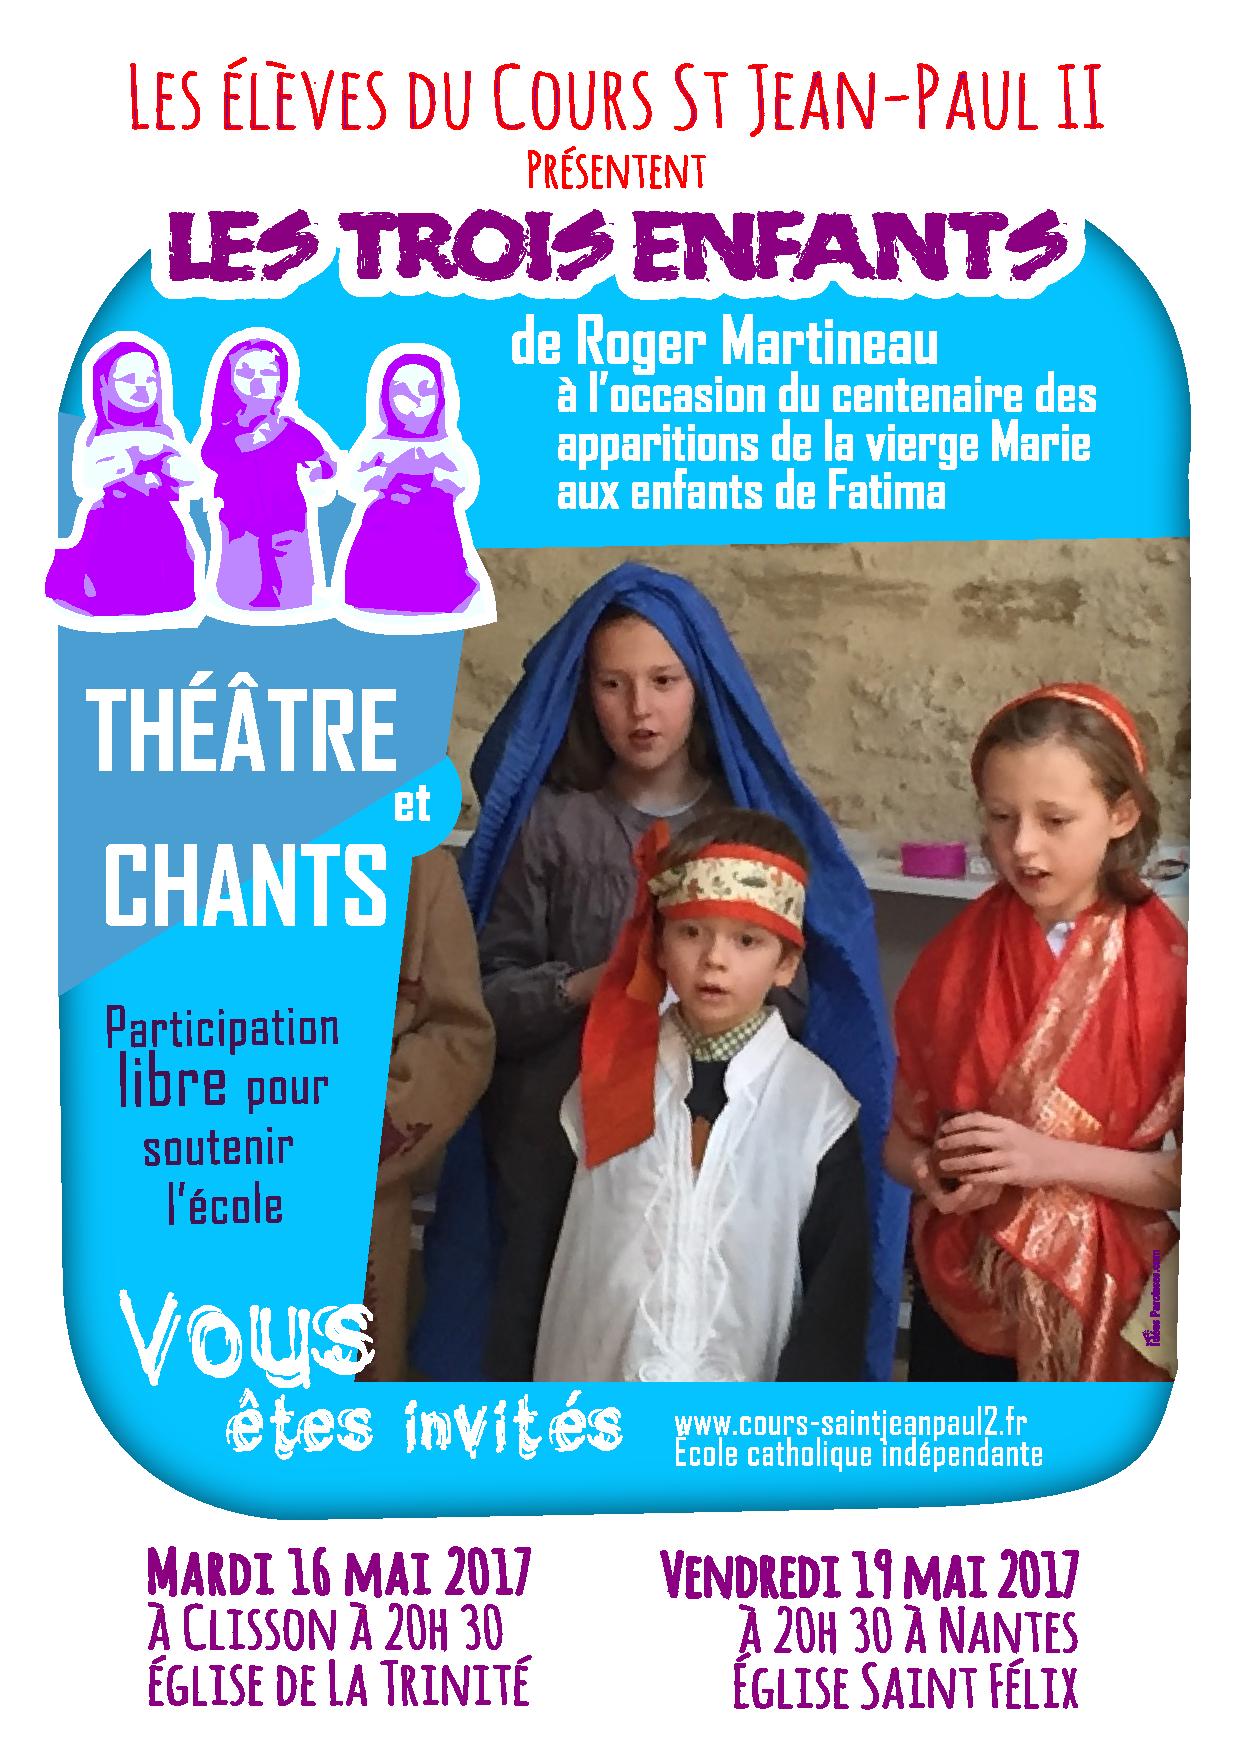 A Clisson, les élèves du cours St Jean-Paul II présentent “Les trois enfants”, spectacle de Roger Martineau